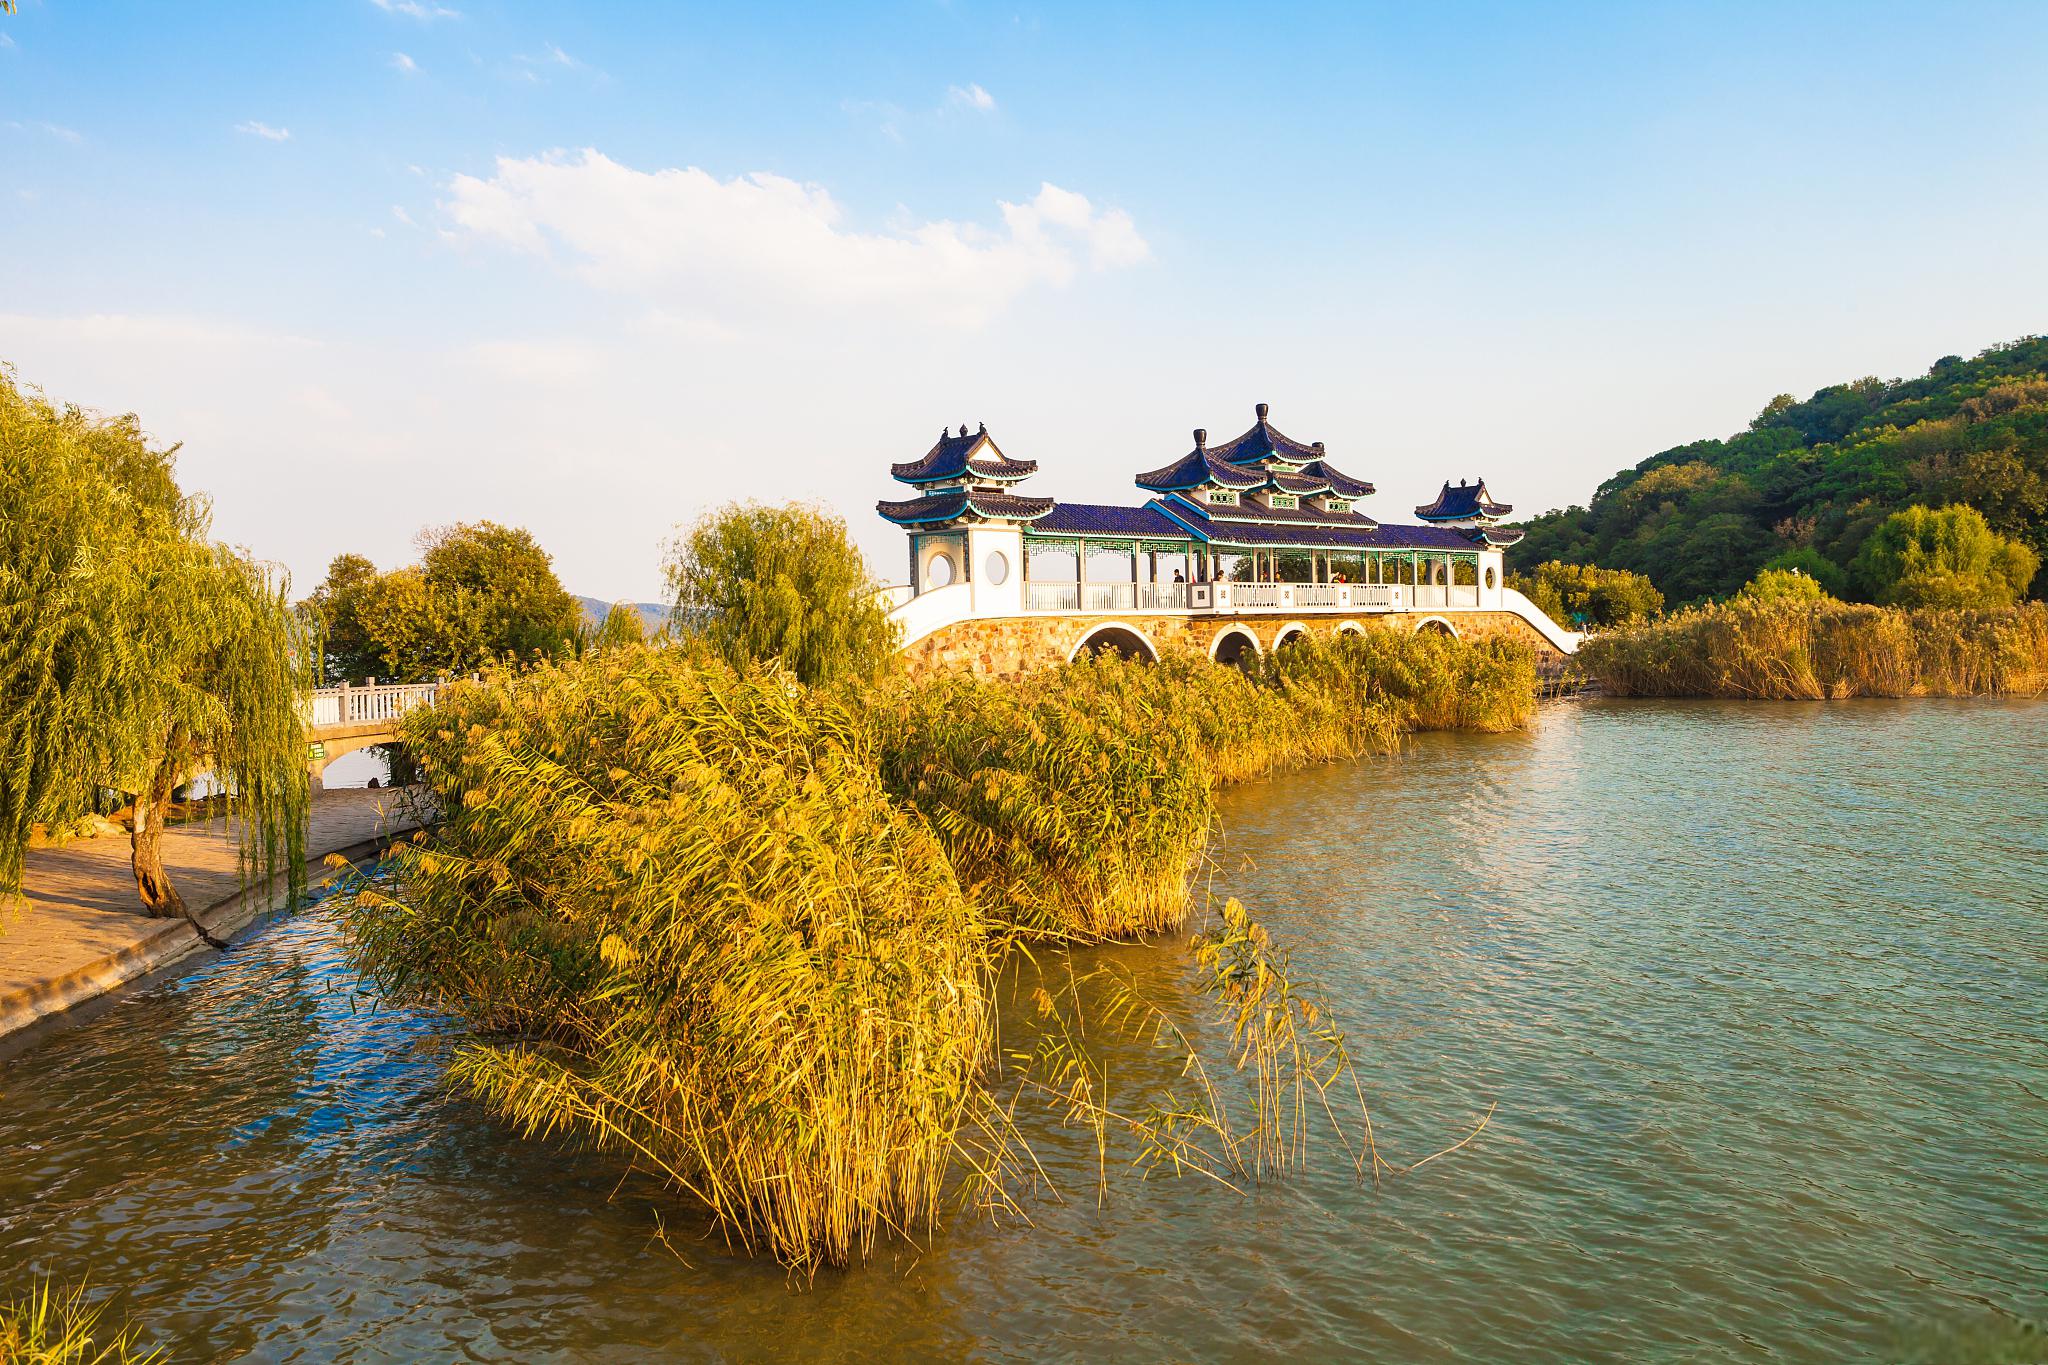 一个不容错过的旅游胜地 吴中太湖旅游区位于中国江苏省苏州市的西